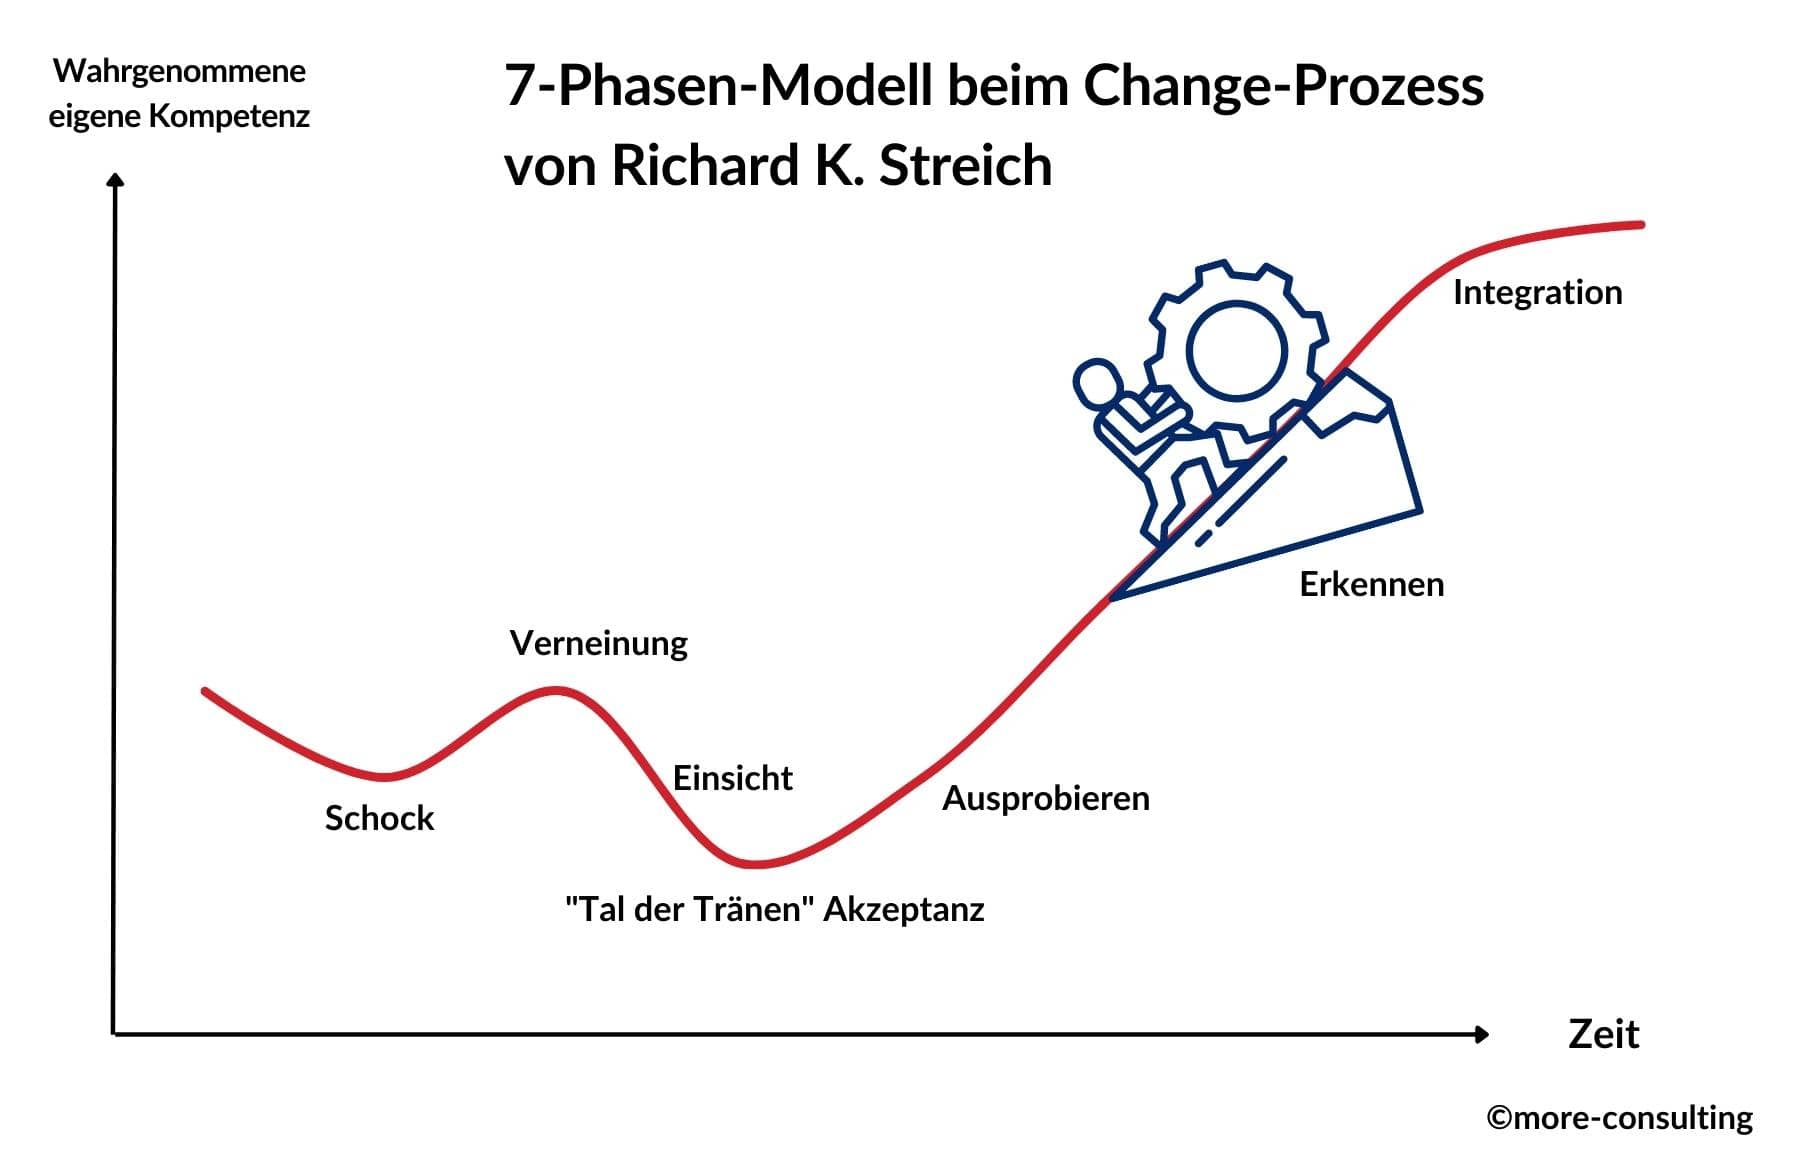 Changemanagement funktioniert nicht schmerzlos, wird dafüer aber mit Wettbewerbsvorteilen und Umsatzsteigerungen belohnt. Die Grafik zeigt die sieben Phasen, die man beim Change-Prozess durchläuft.